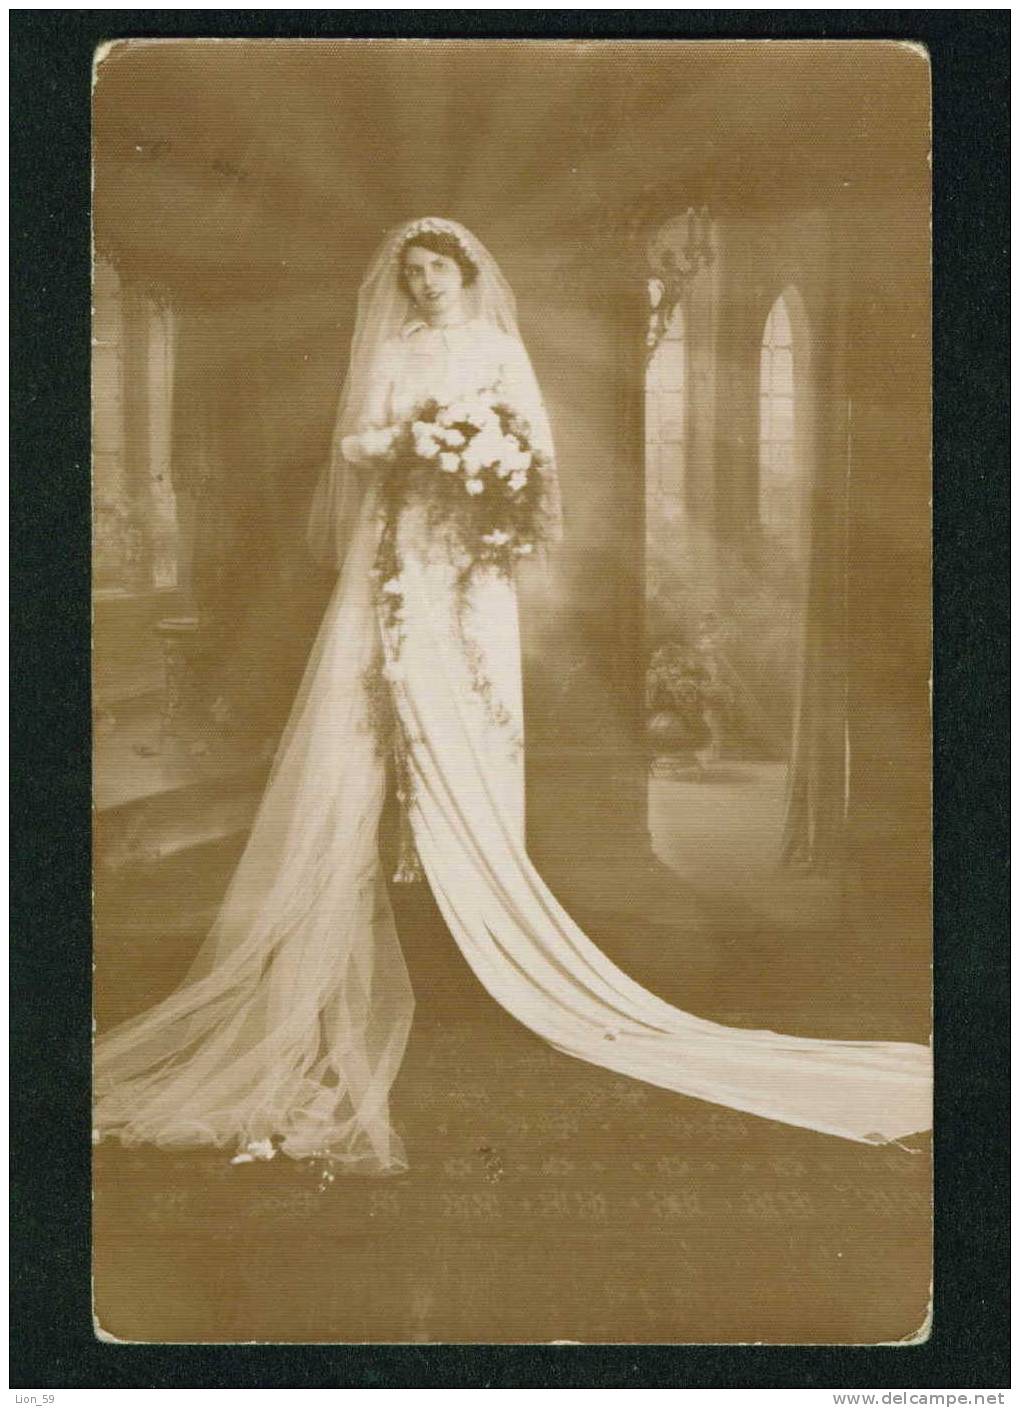 D1106 / Marriages  WEDDING , BRIDE  Bulgaria  Vintage REAL Photo 1920s - Matrimonios